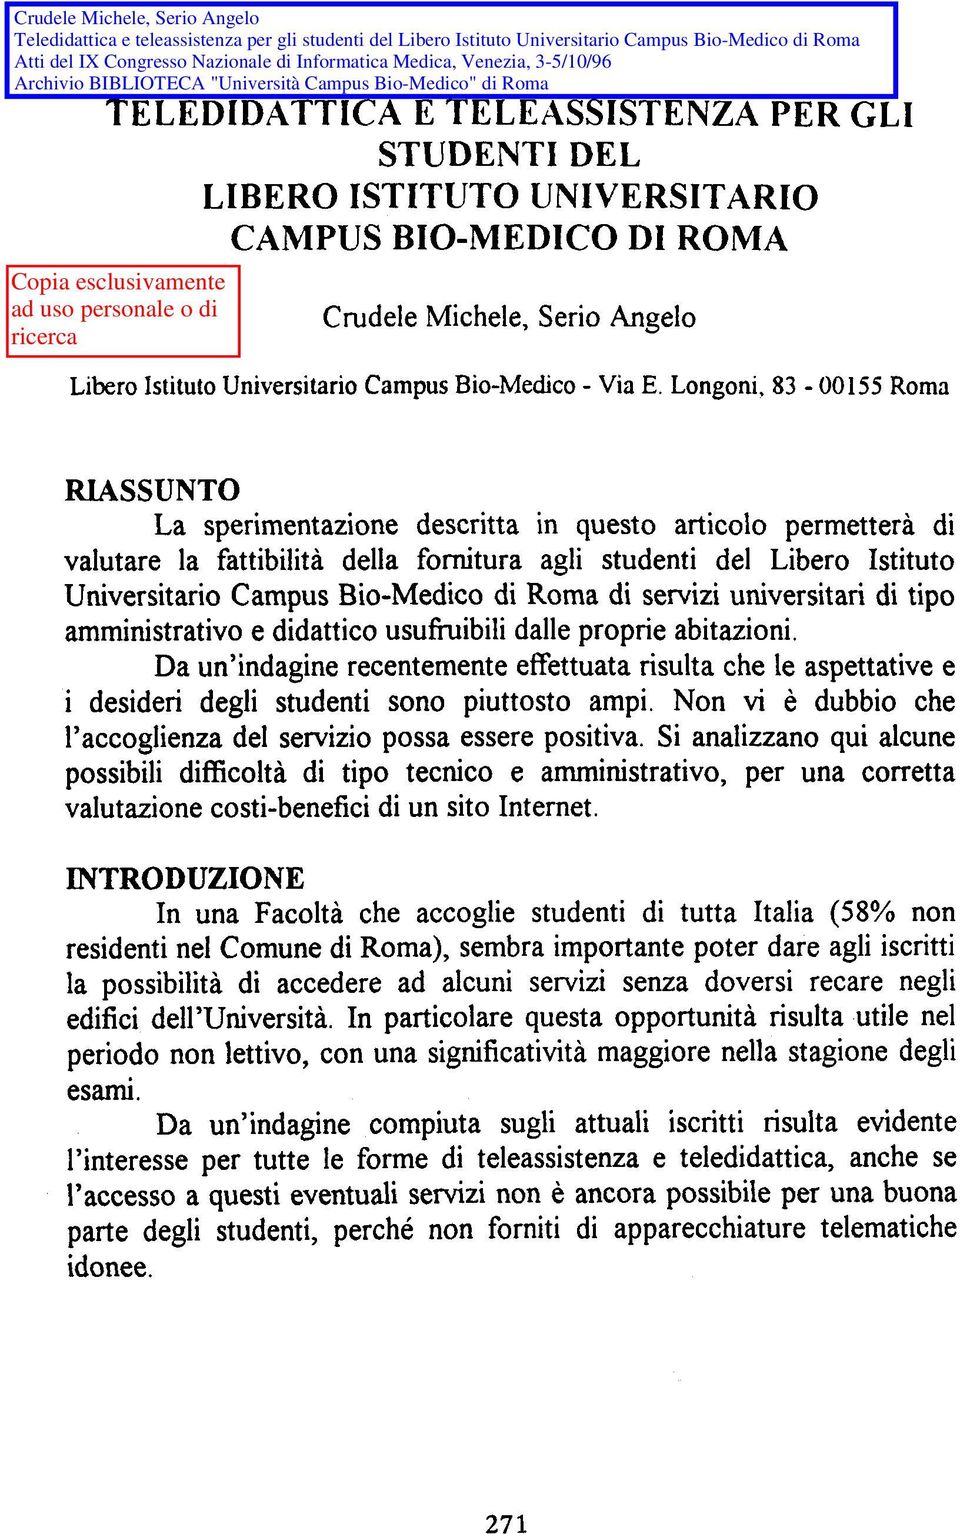 Bio-Medico di Roma di servizi universitari di tipo amministrativo e didattico usufìuibili dalle proprie abitazioni.